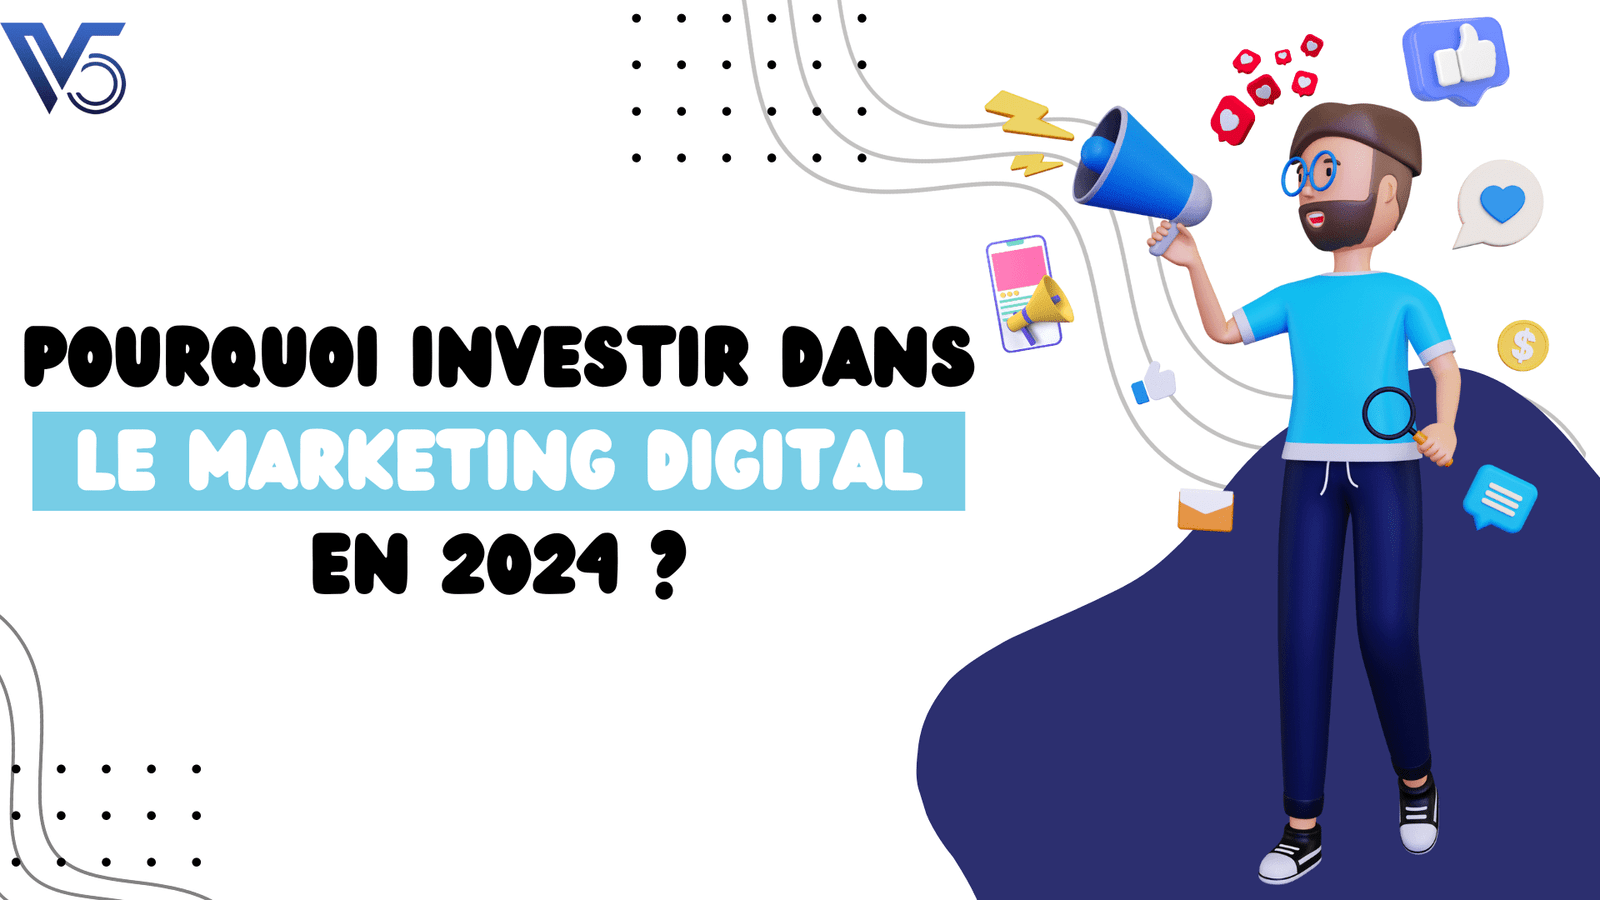 Pourquoi investir dans le Marketing Digital en 2024